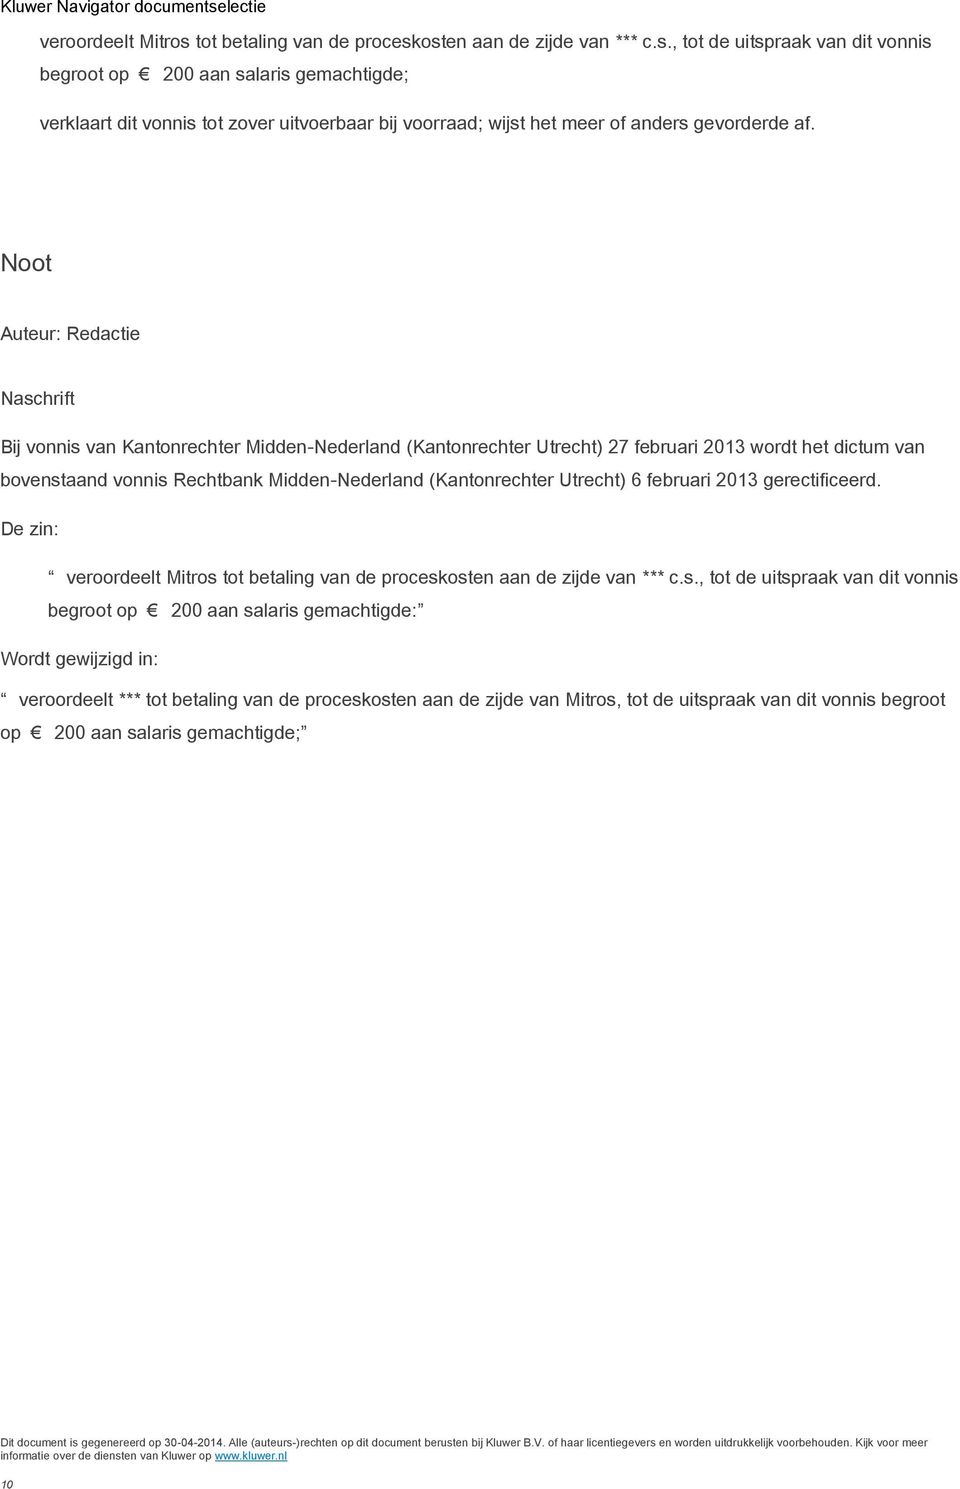 (Kantonrechter Utrecht) 6 februari 2013 gerectificeerd. De zin: veroordeelt Mitros 